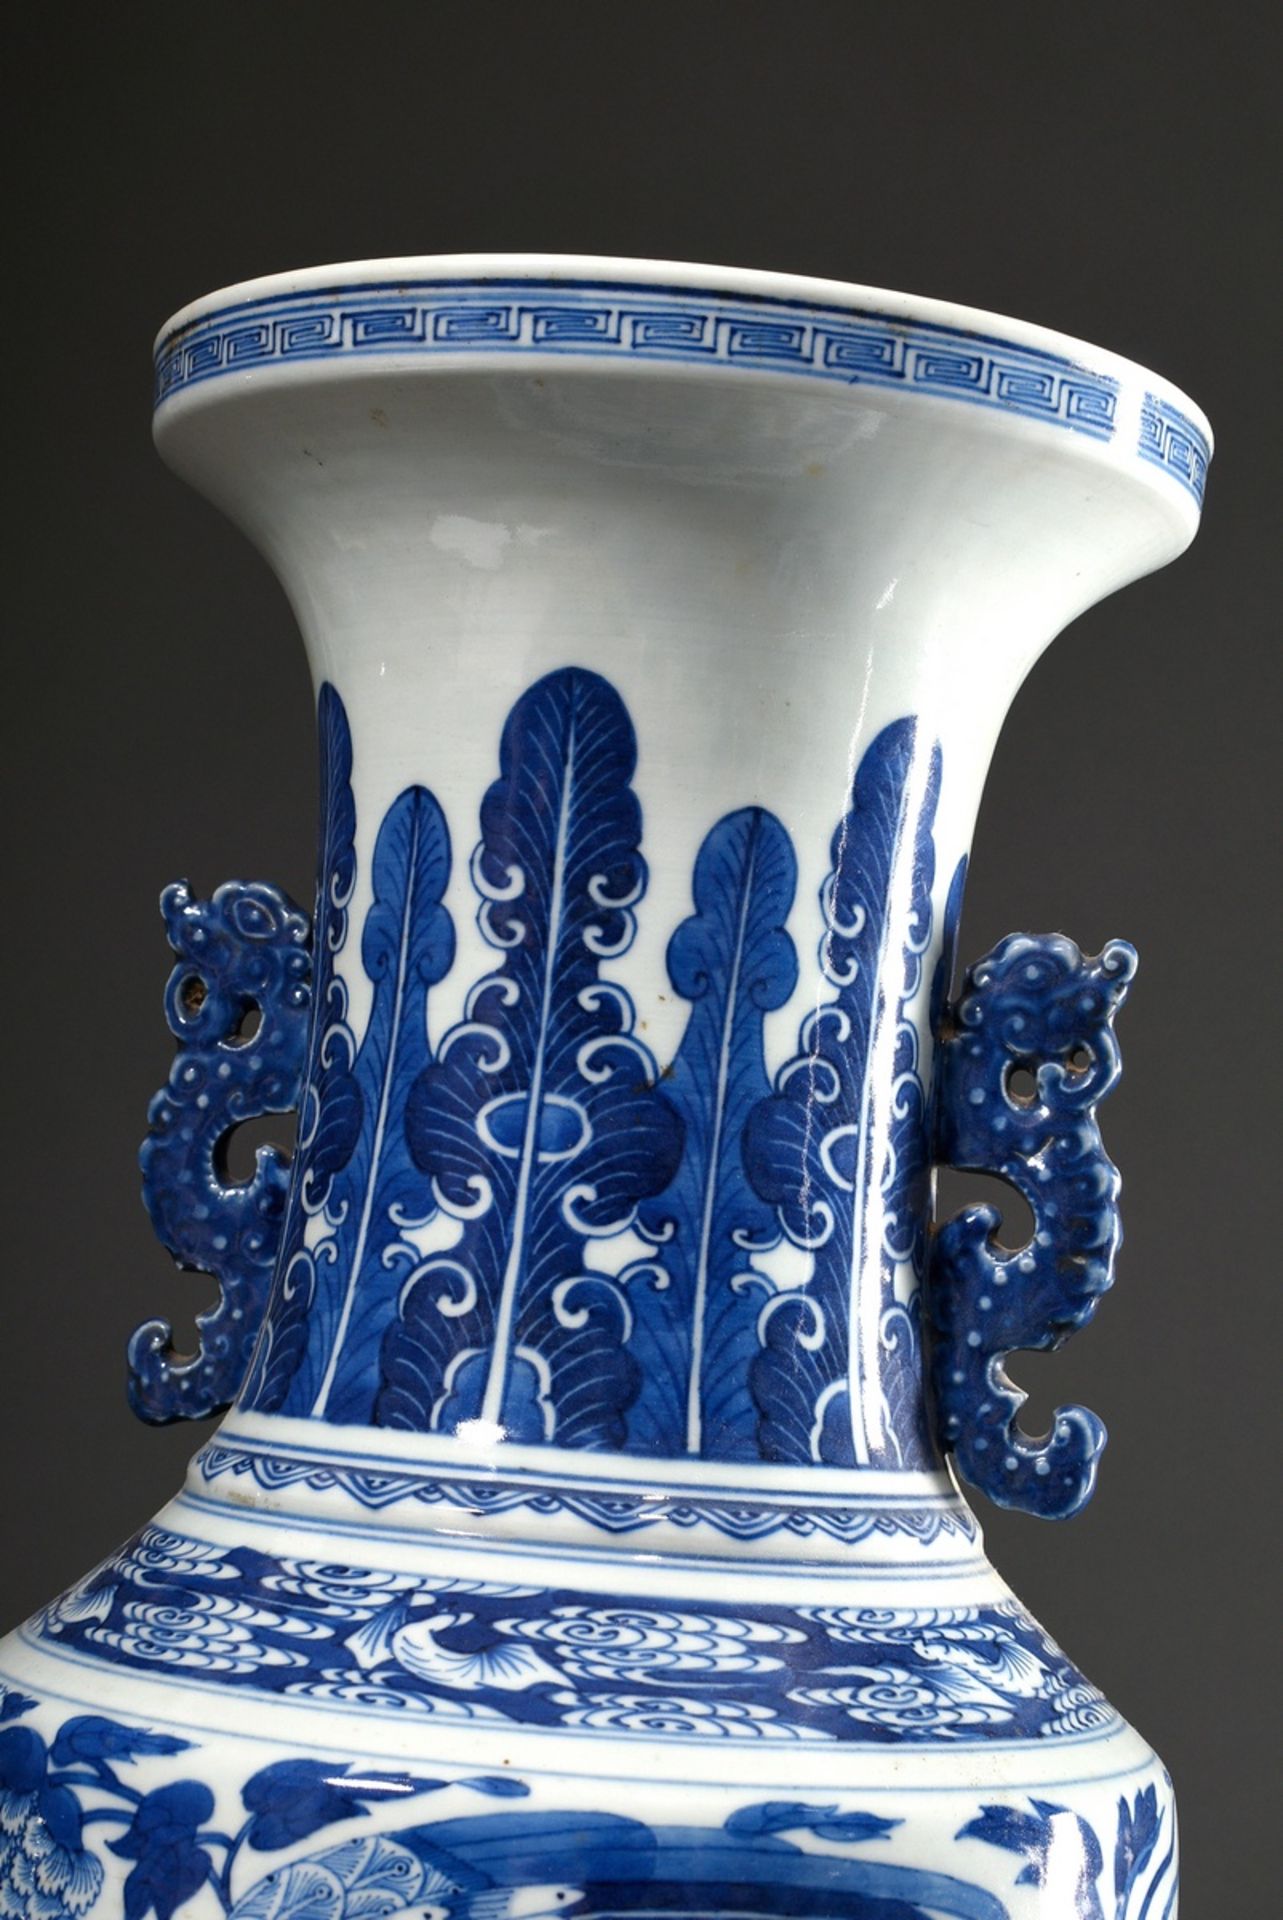 2 Diverse hohe Porzellan Rouleau Vasen mit seitlichen Henkeln in Drachenform und reichem Blaumalere - Bild 6 aus 9